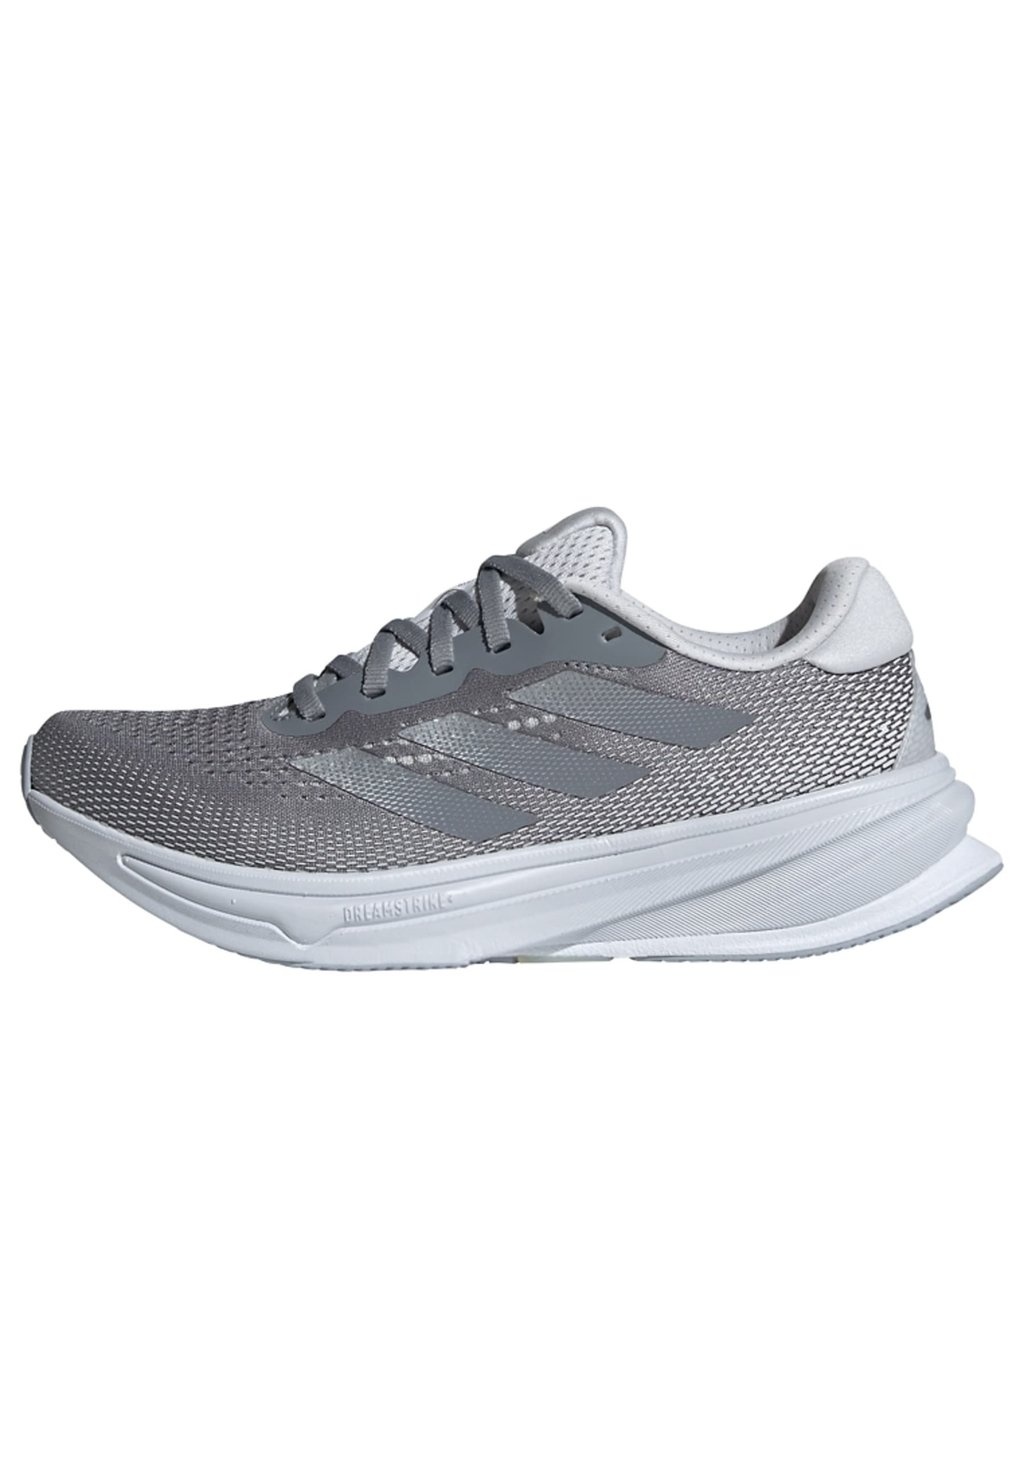 Нейтральные кроссовки SUPERNOVA RISE adidas Performance, цвет grey silver metallic dash grey